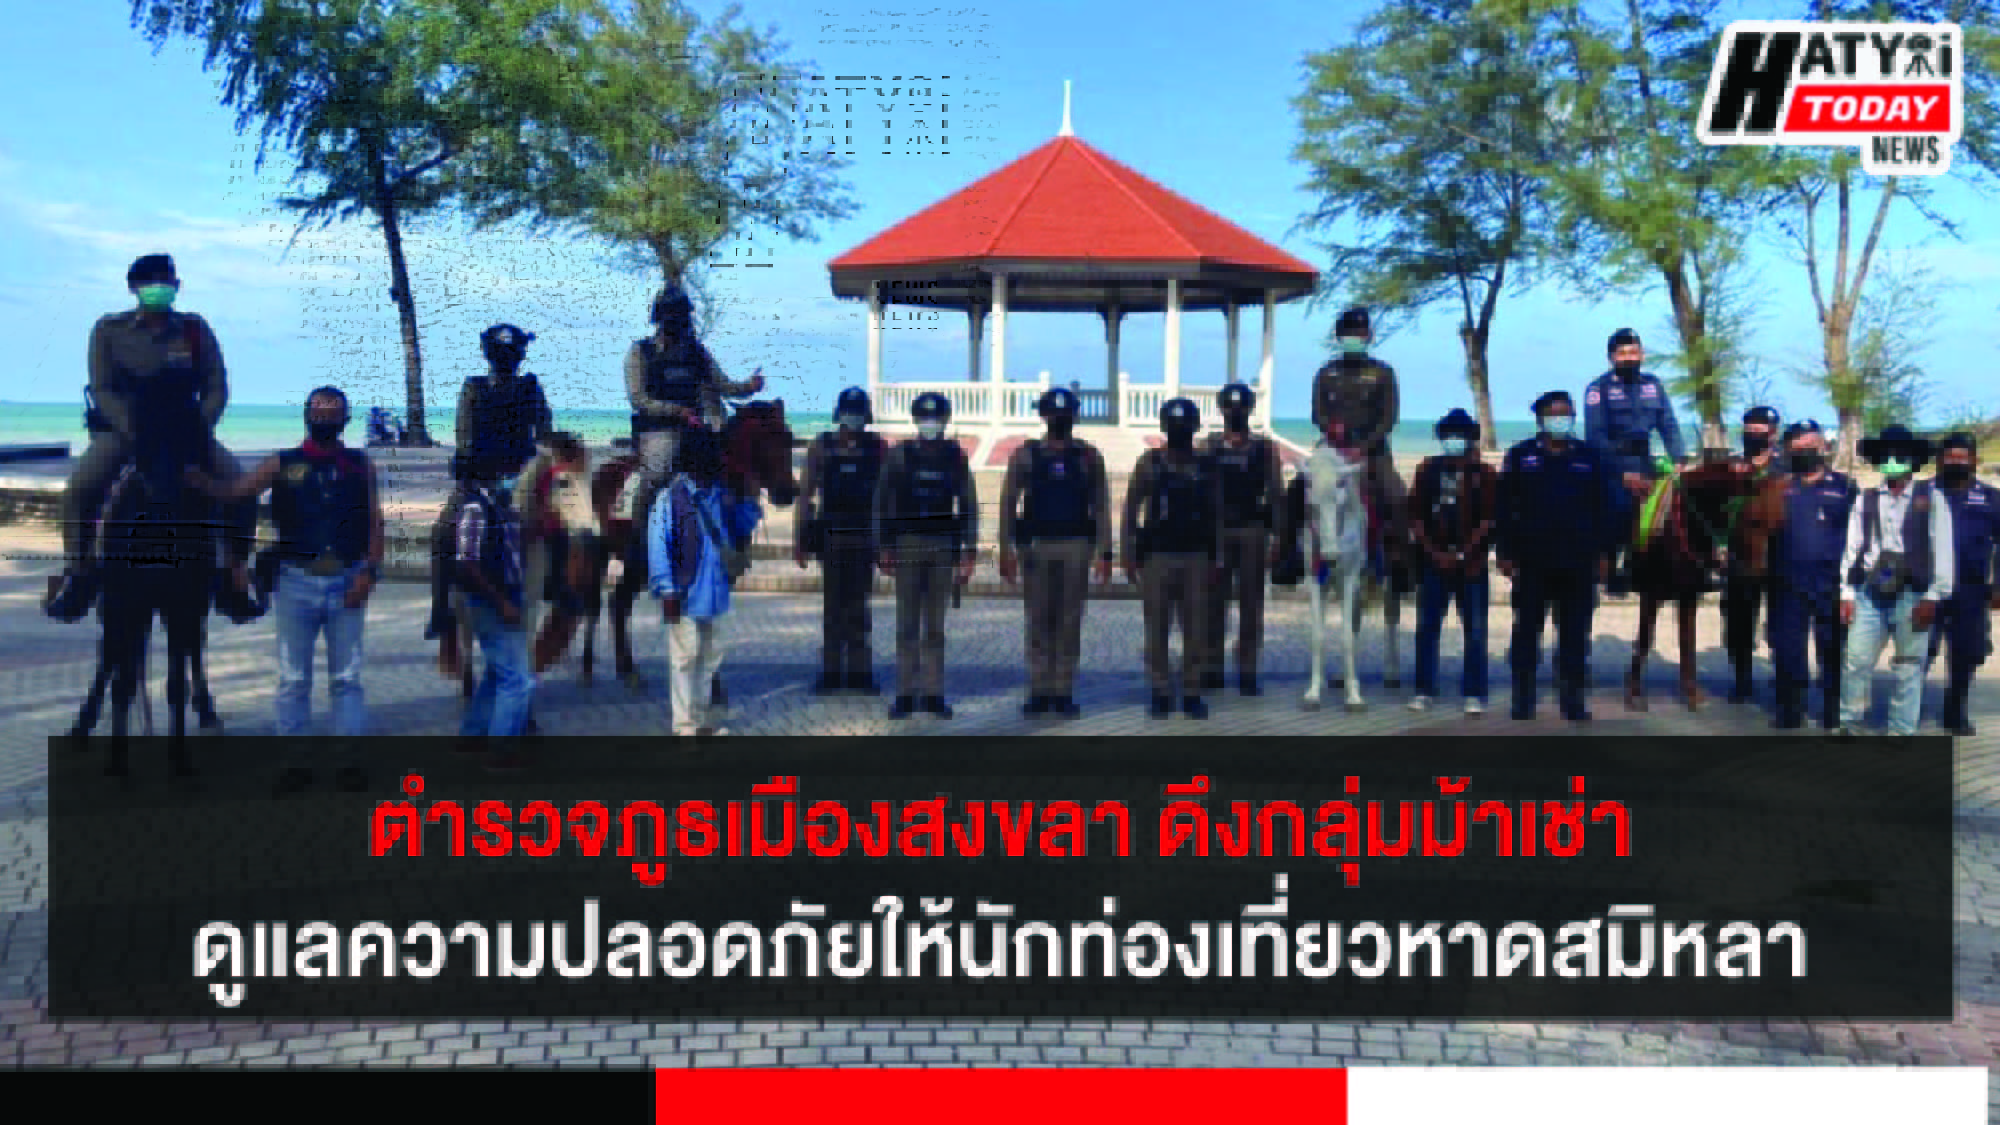 ตำรวจภูธเมืองสงขลา ดึงกลุ่มม้าเช่าดูแลความปลอดภัยให้นักท่องเที่ยวหาดสมิหลา